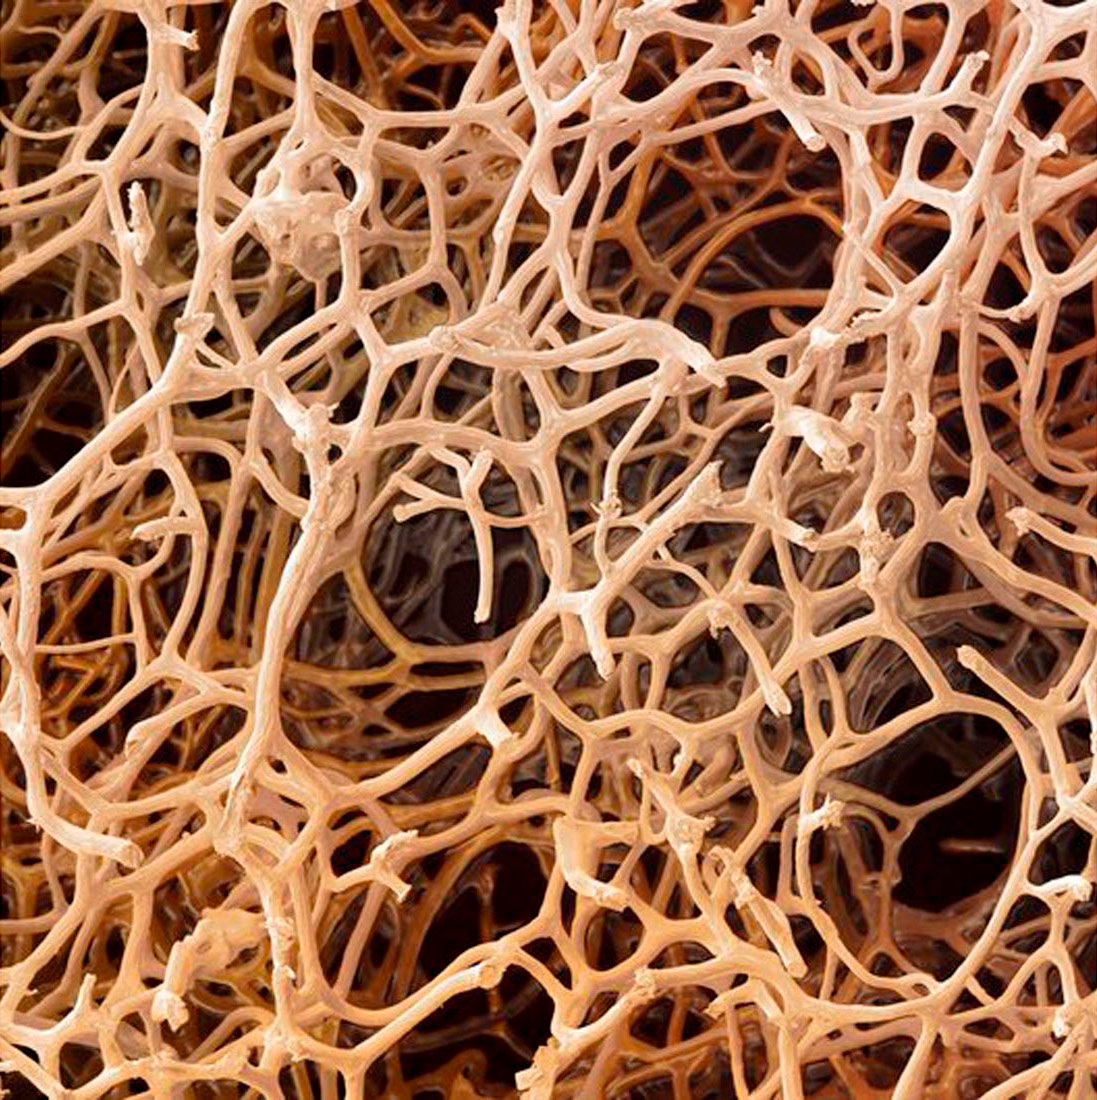 Slika prikazuje niti spongina. Sastoji se od vrlo velikog broja isprepletenih končića bijelo-sive boje koji čine gustu mrežu.